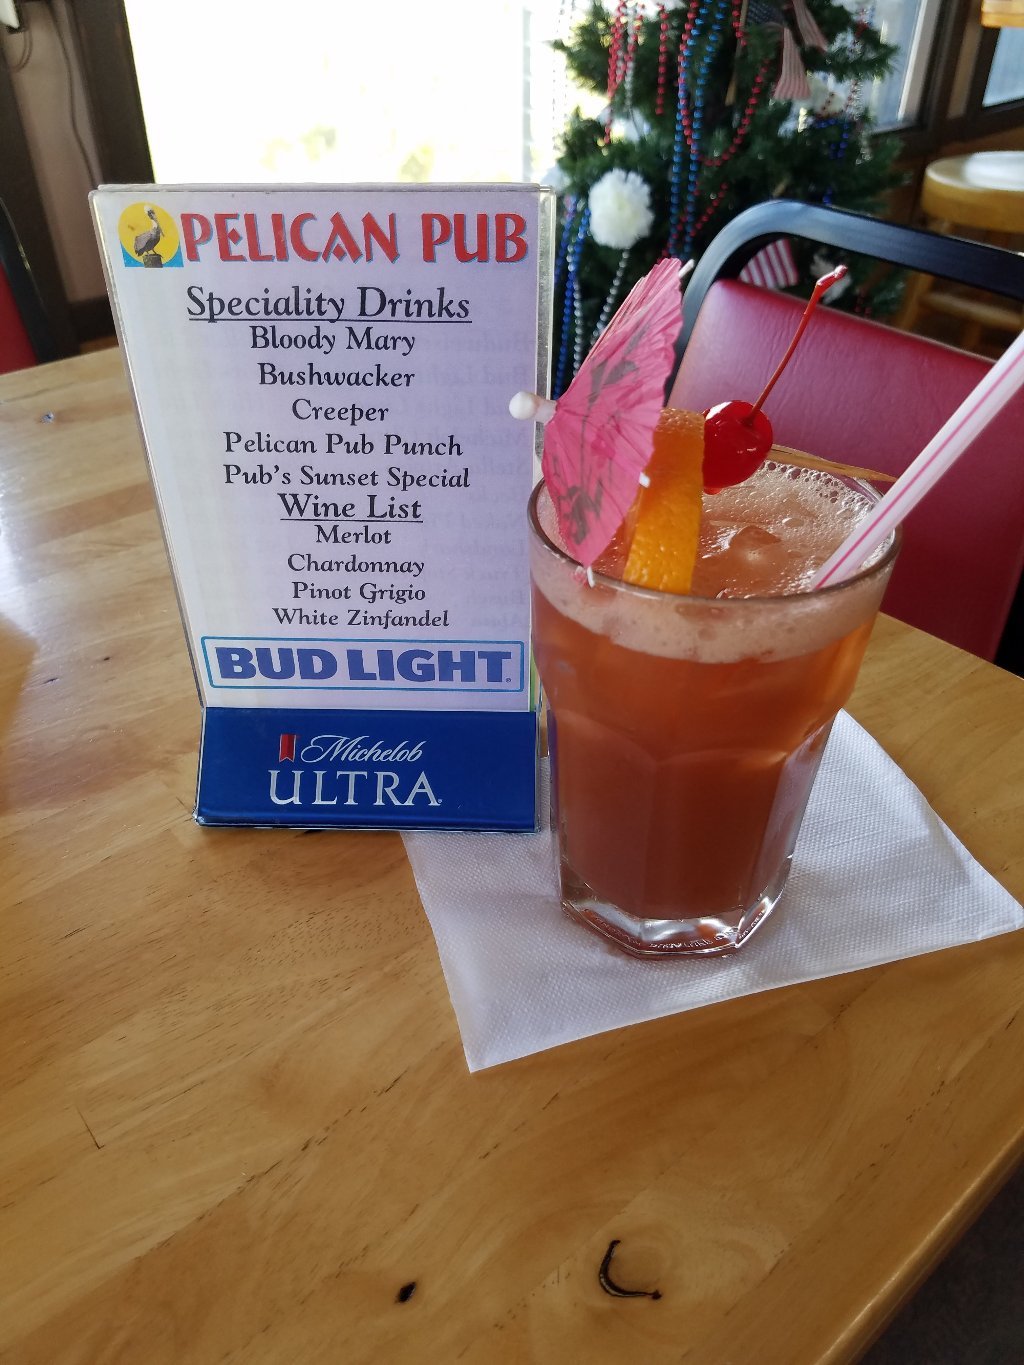 Pelican Pub